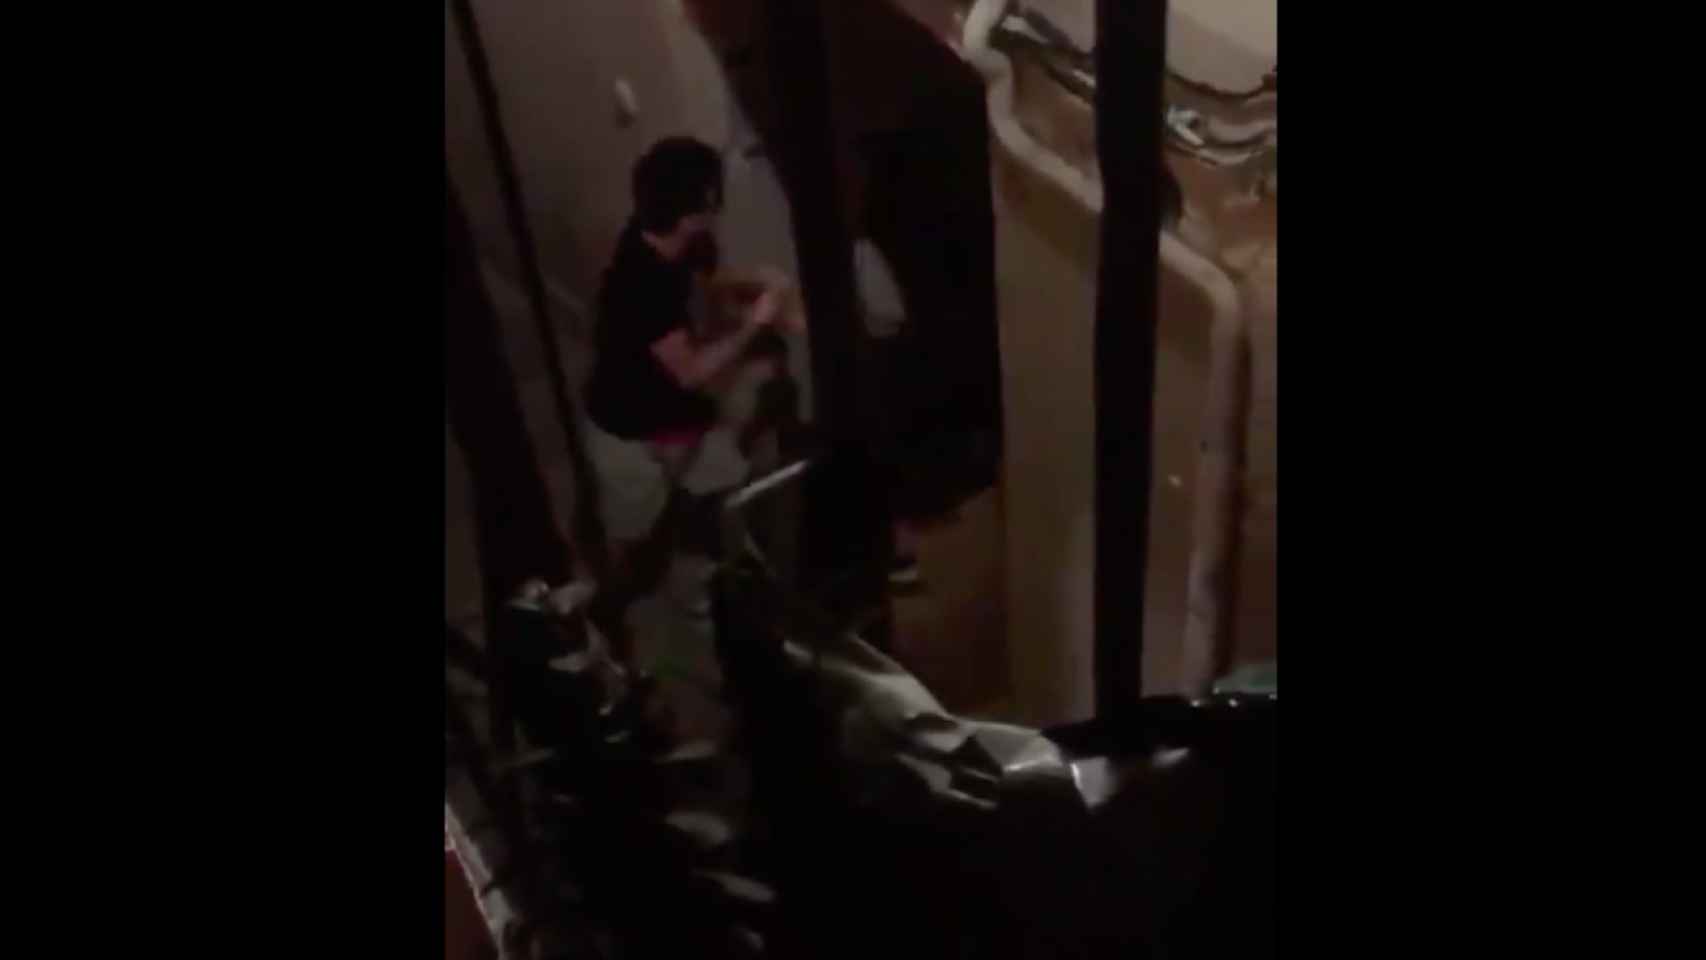 Captura de pantalla del vídeo que muestra la agresión del turista a la prostituta en el Gòtic / HELPERS